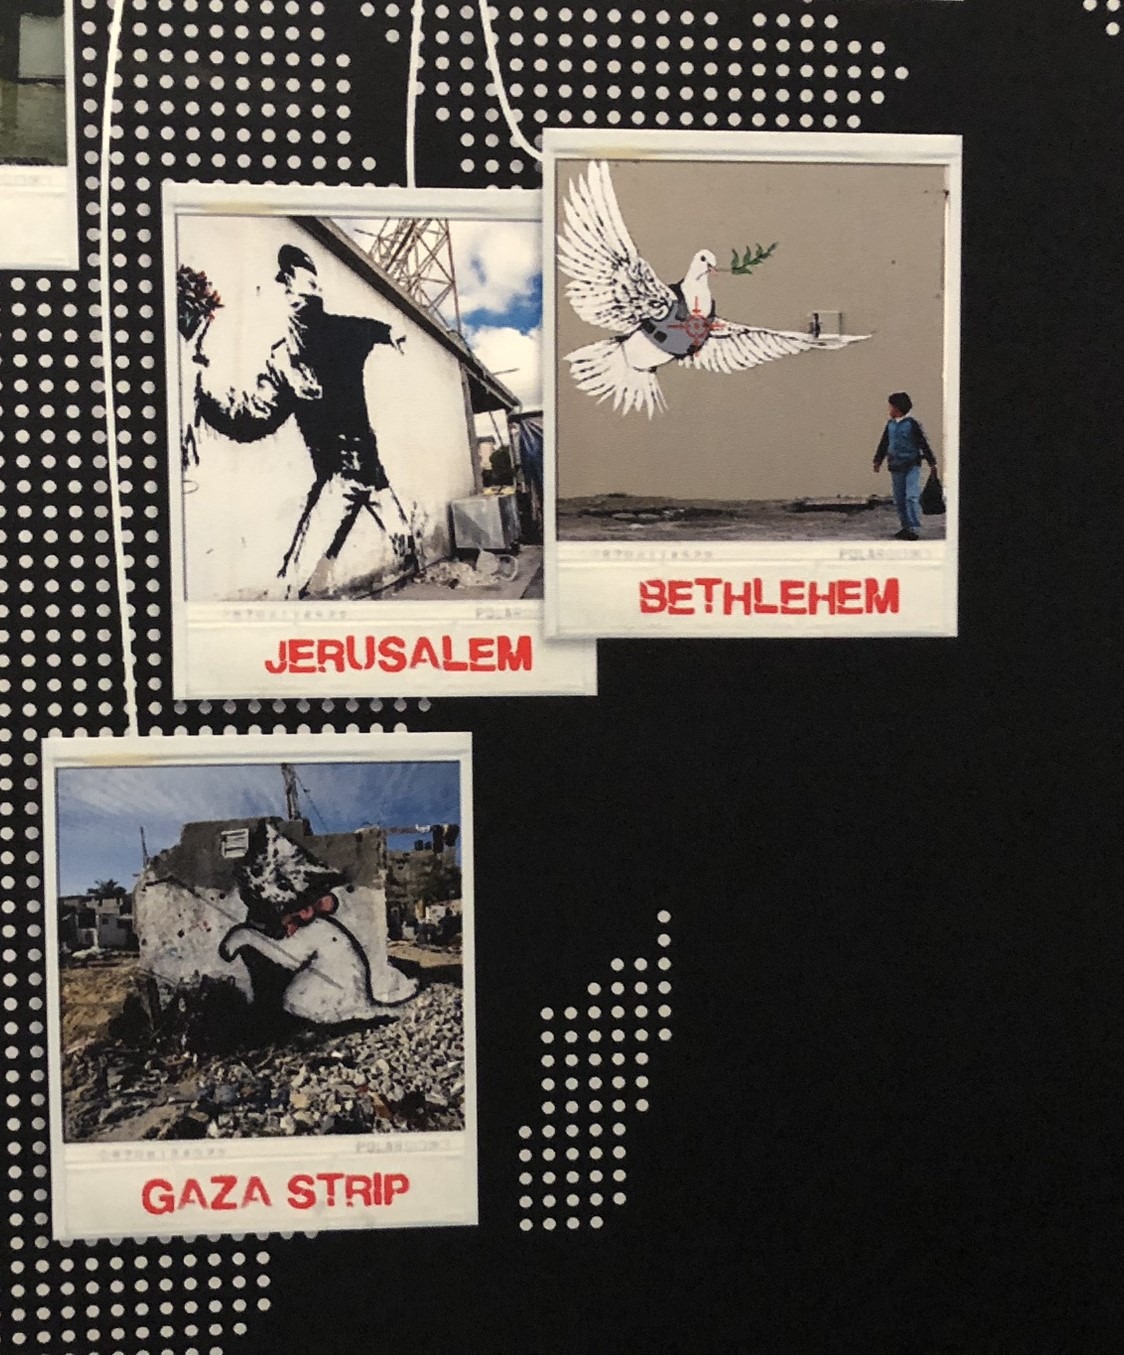 Städte-Cards mit Banksy-Graffitis von Jerusalem, Bethlehem und Gaza Streifen